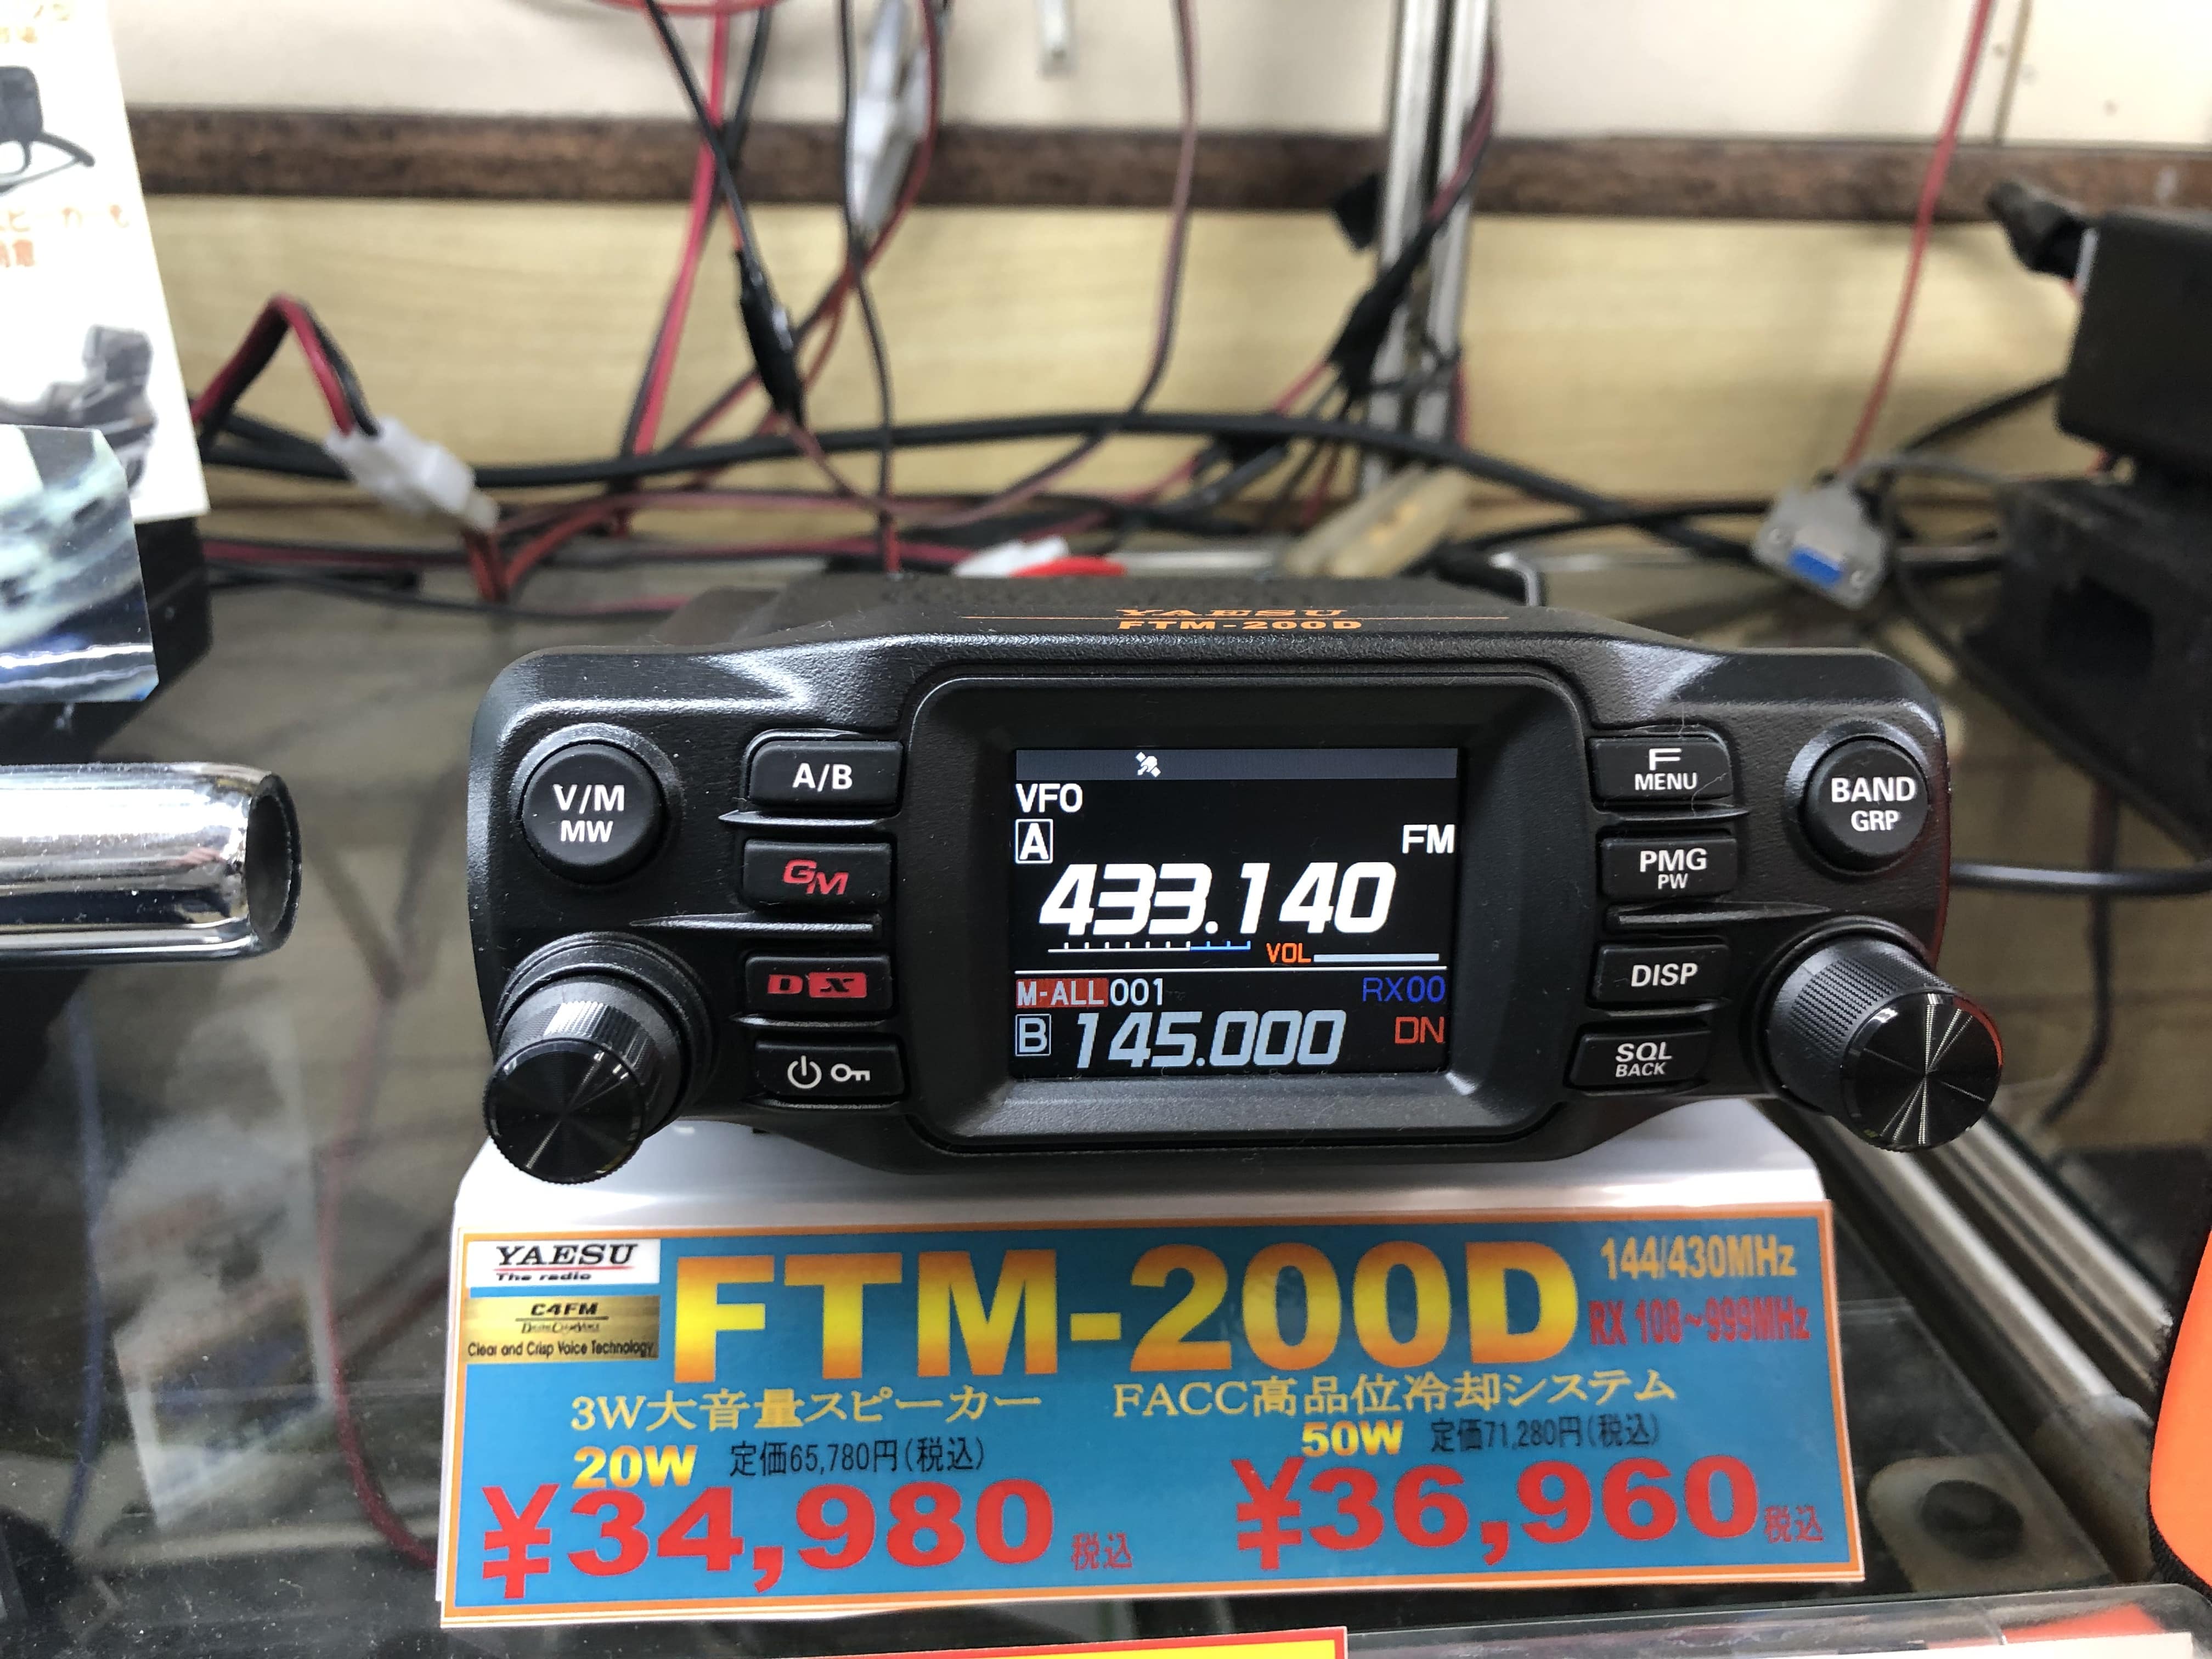 再入荷格安 ヤエス(八重洲無線) FTM-200D (50W) C4FM /FM 144/430MHz